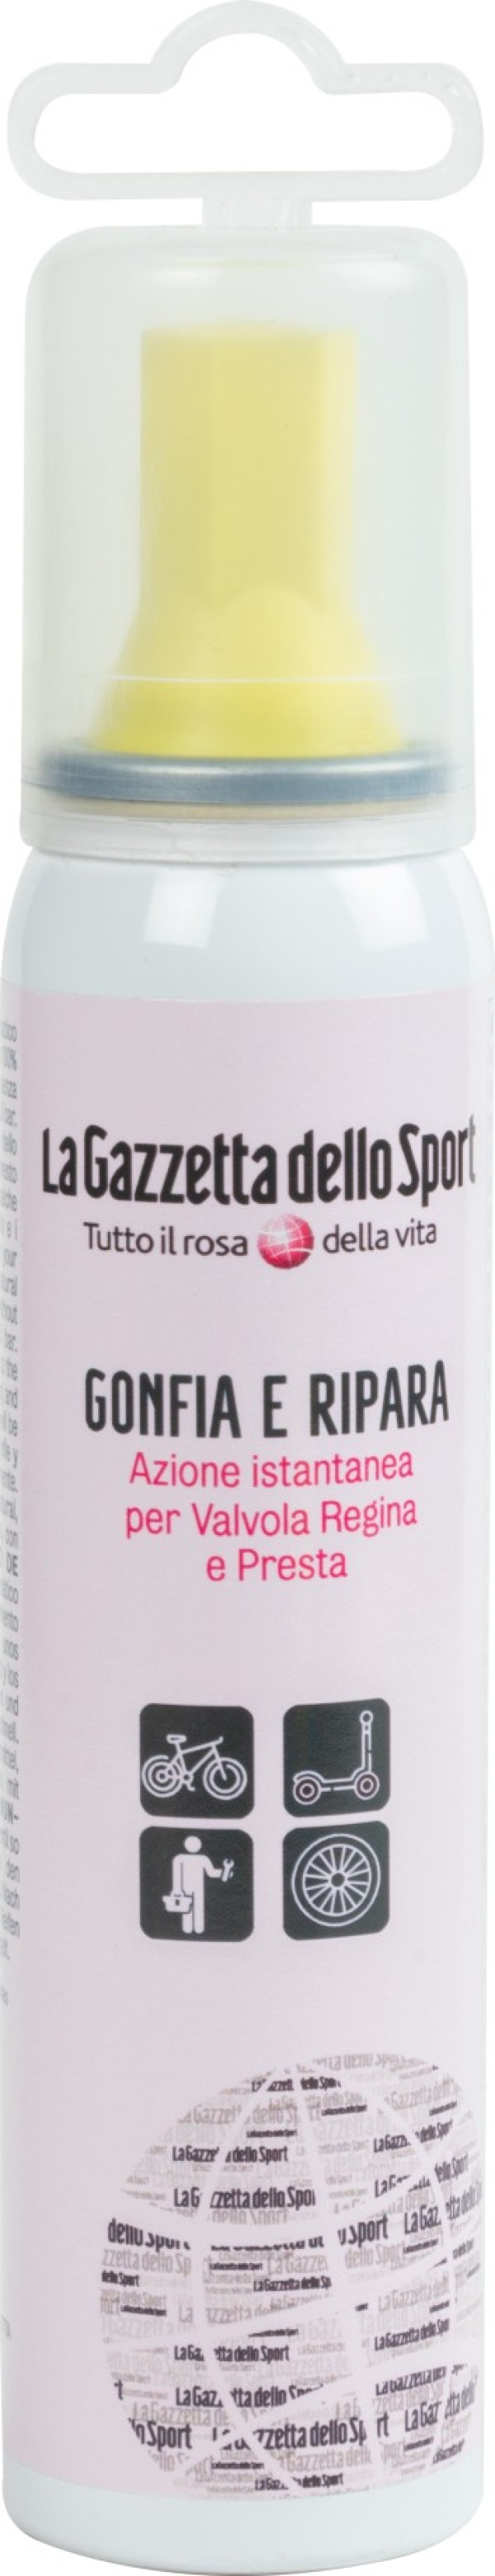 Gonfia e Ripara Bici 100 ml - Gazzetta Dello Sport 